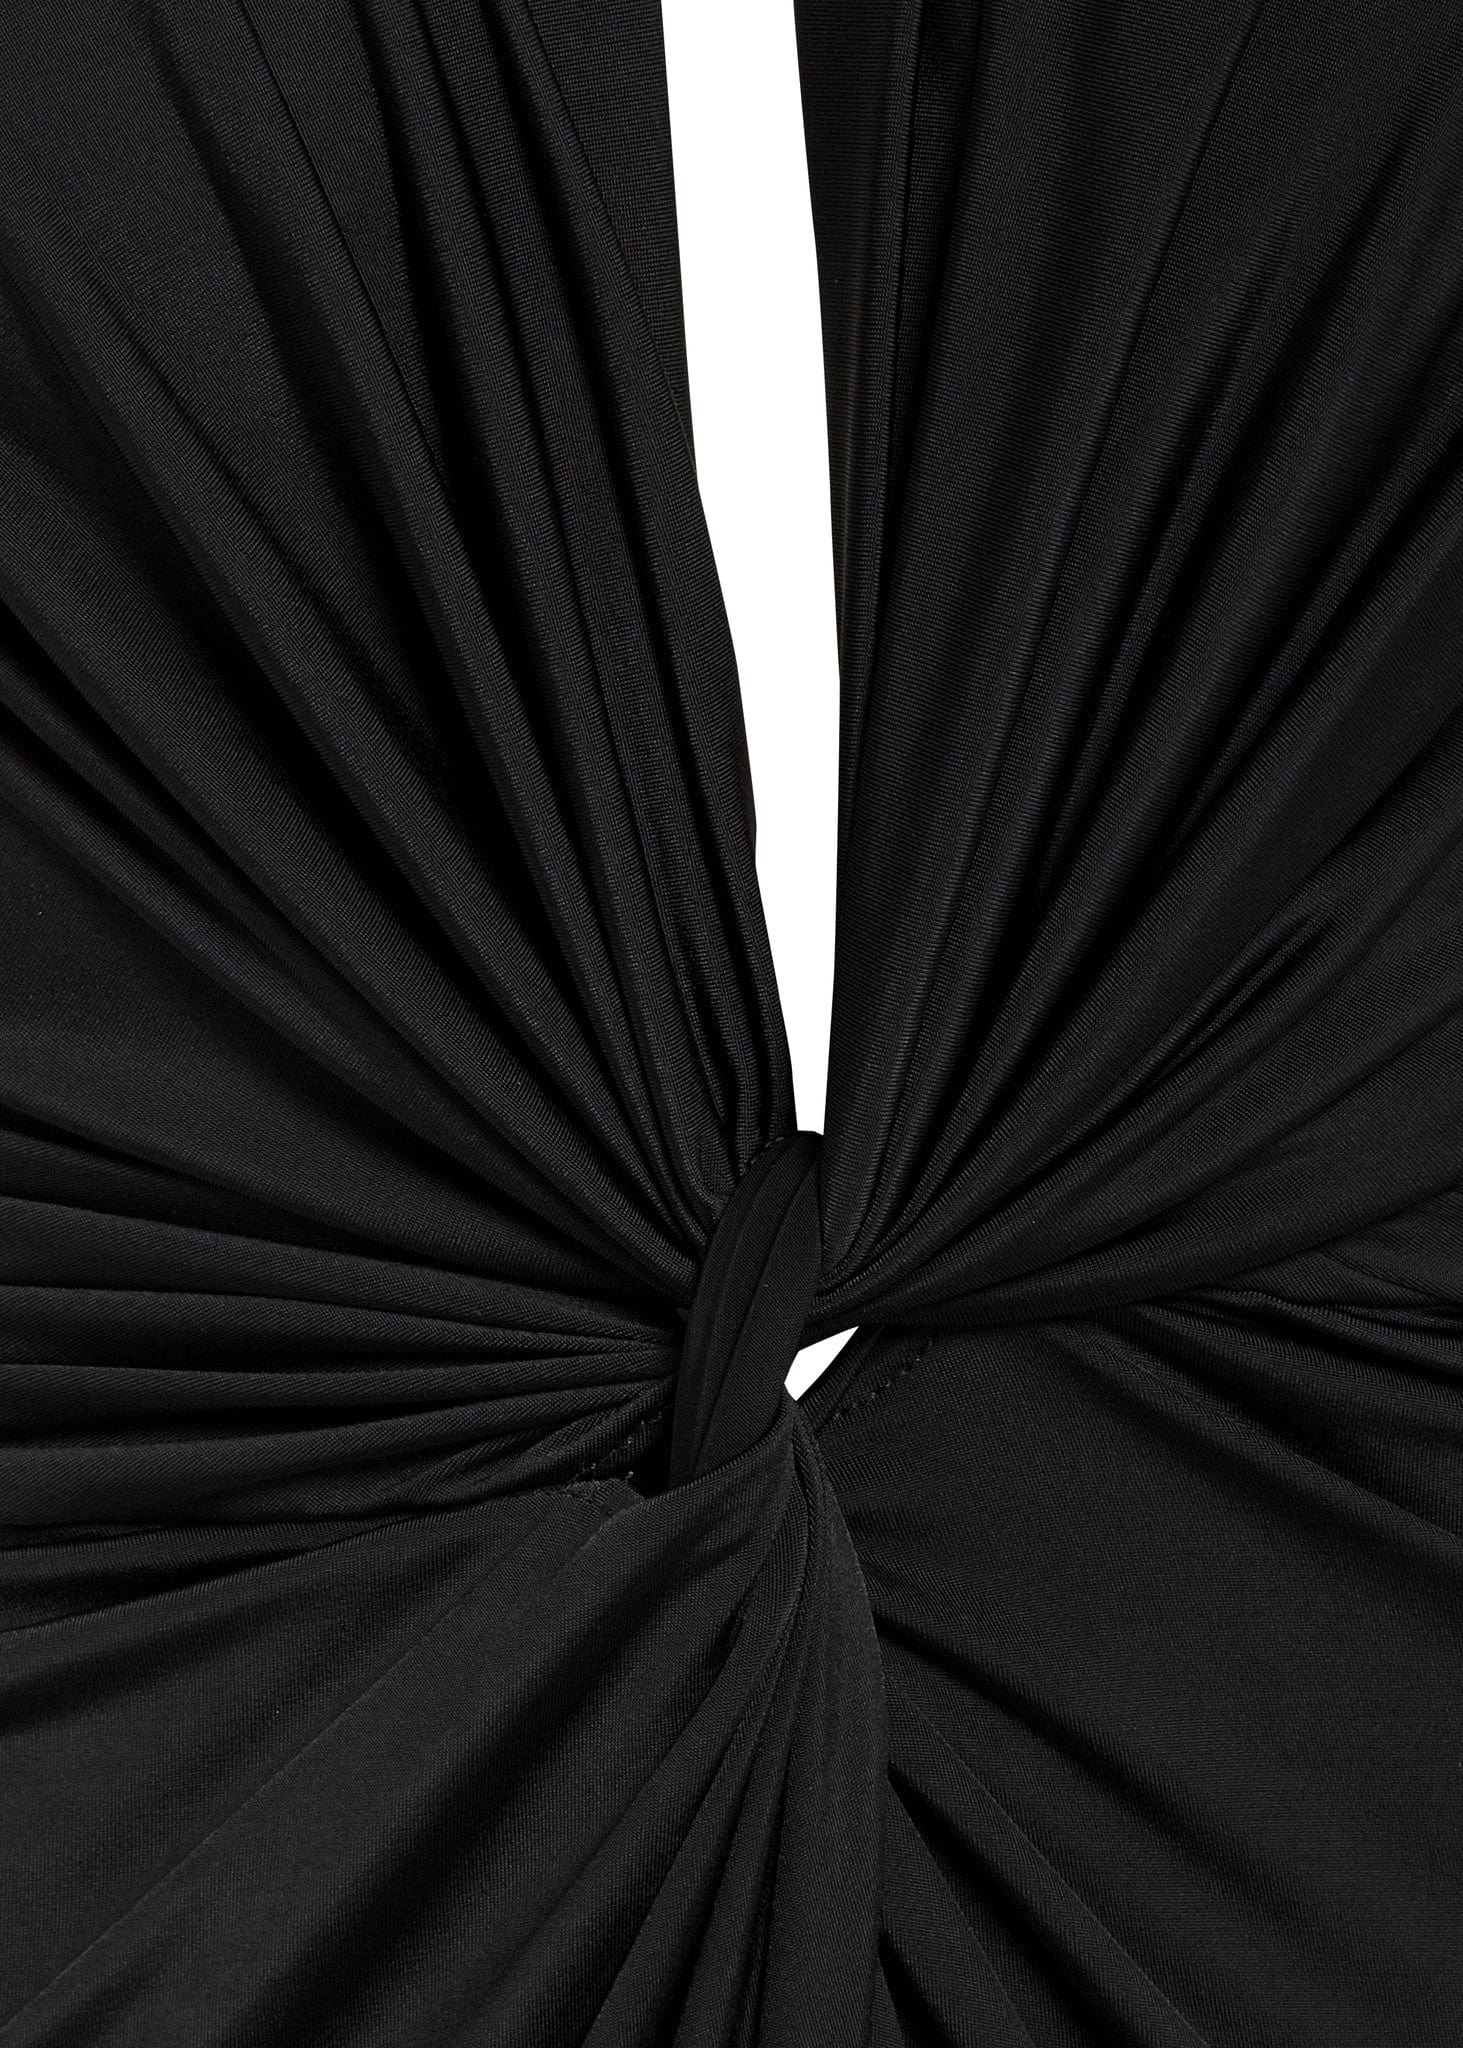 Black Twisted Front Dress - SARVIN-4137